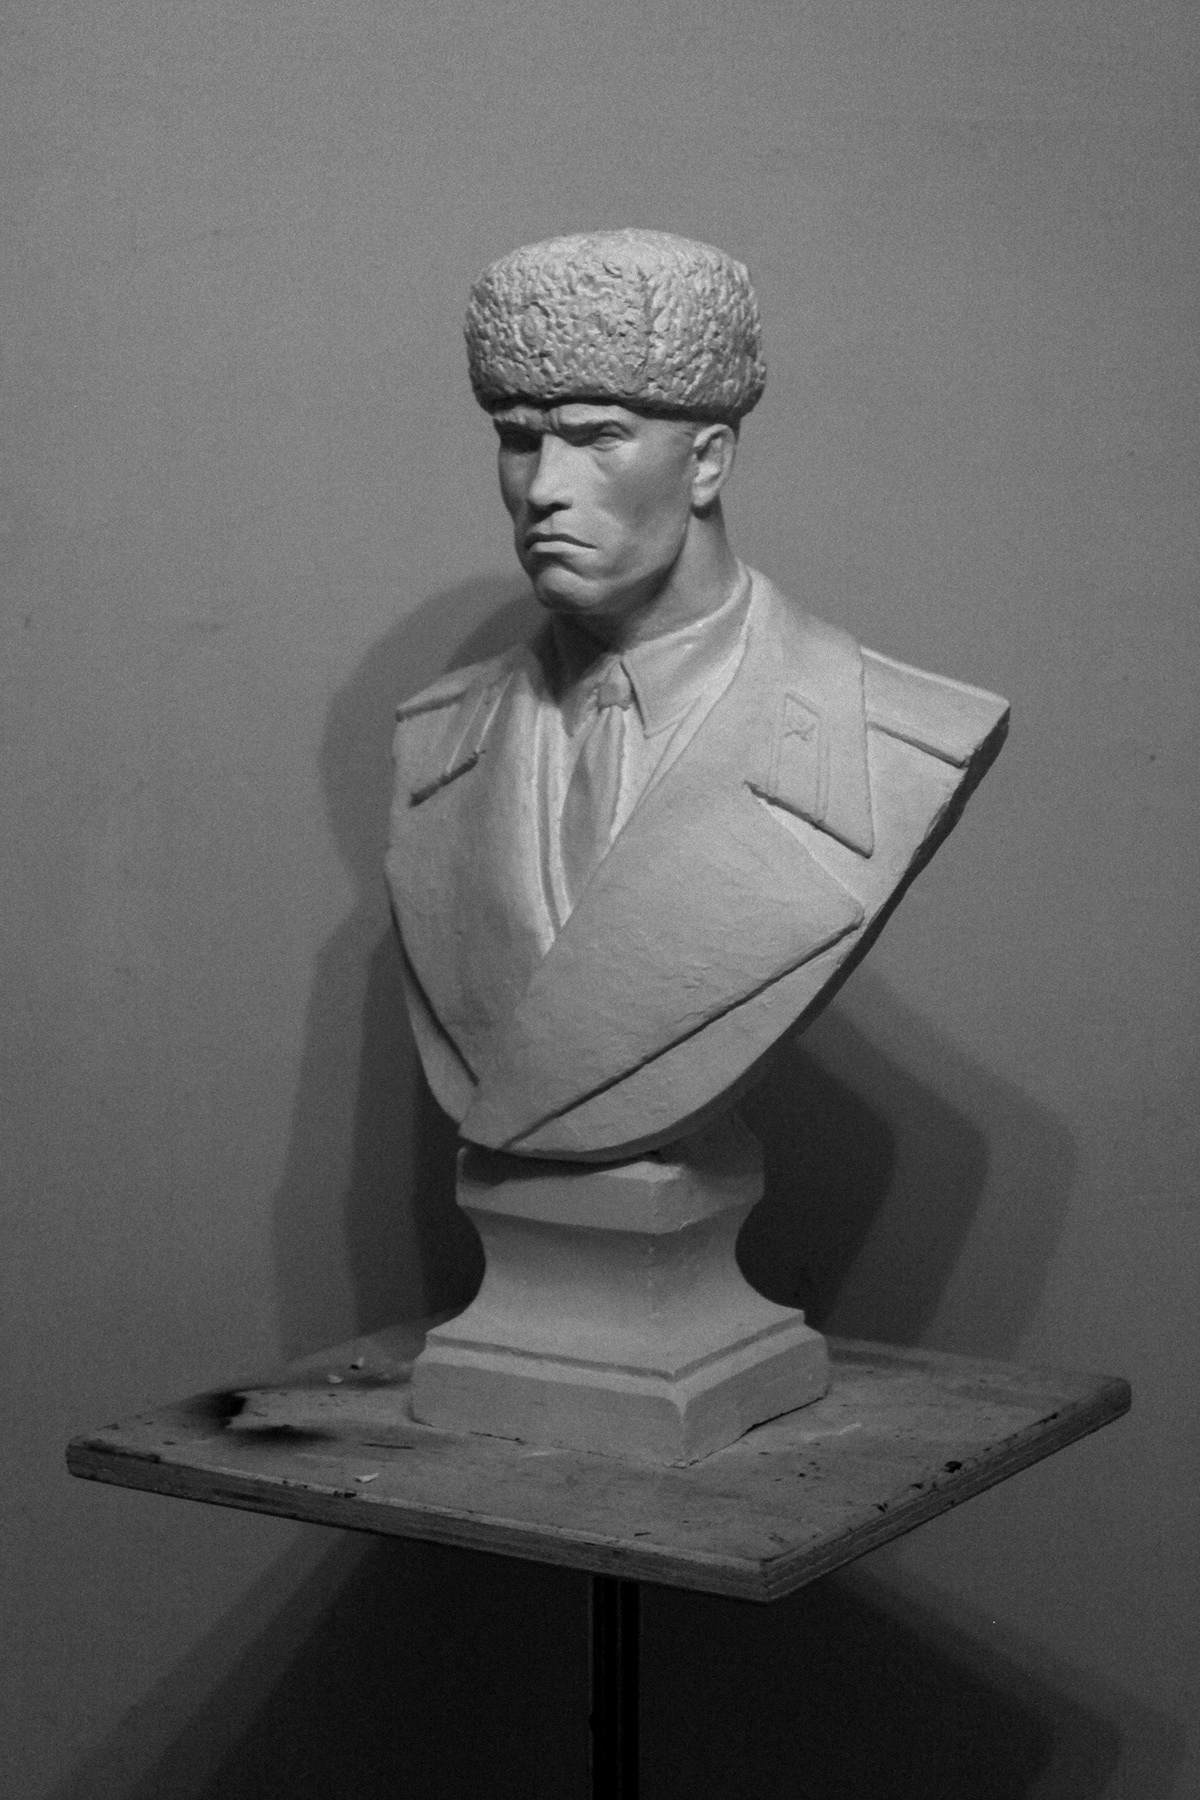 schwarzenegger red heat movie arnold Arnold Schwarzenegger sculpture portrait bust Ivan Danko Movie Hero action movie